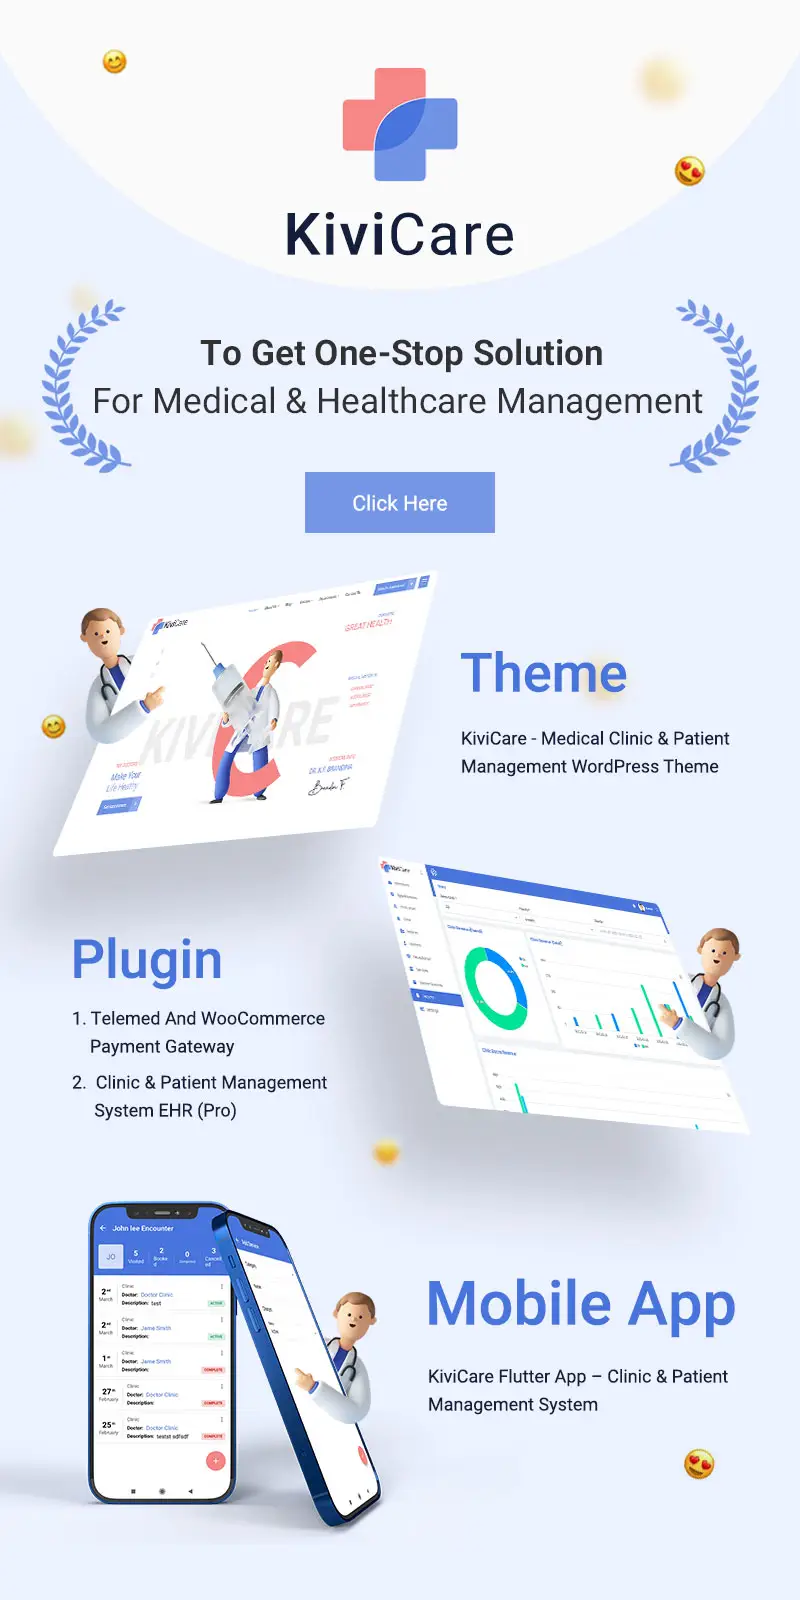 KiviCare Flutter 2.0 App – Clinic & Patient Management System - 9